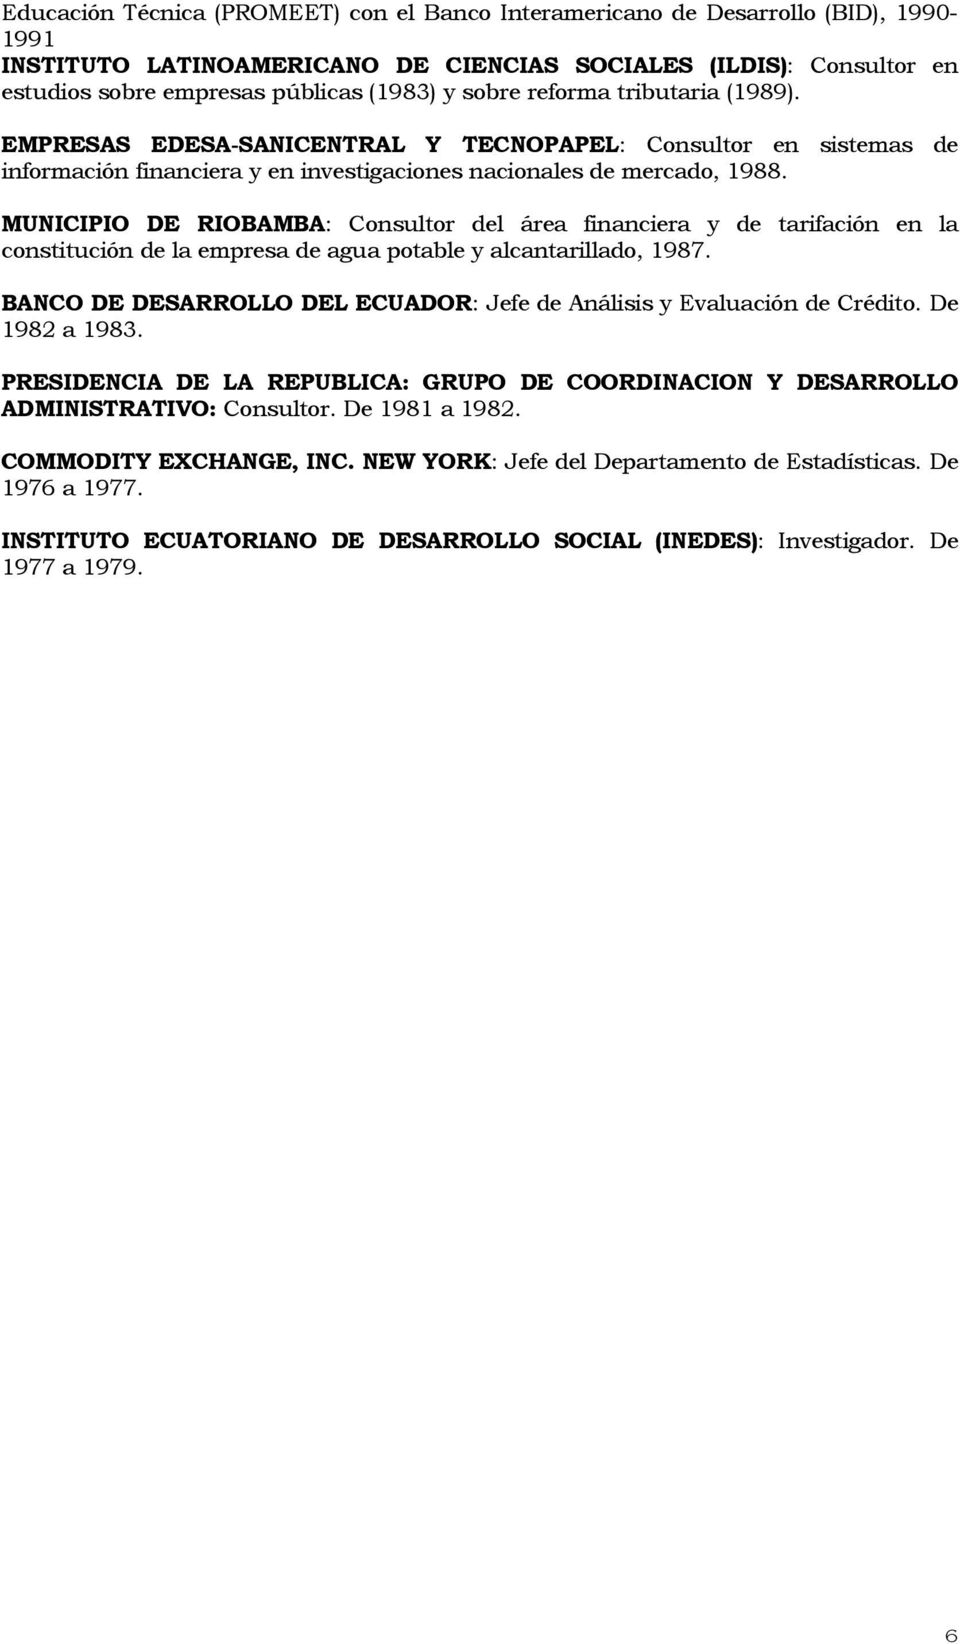 MUNICIPIO DE RIOBAMBA: Consultor del área financiera y de tarifación en la constitución de la empresa de agua potable y alcantarillado, 1987.